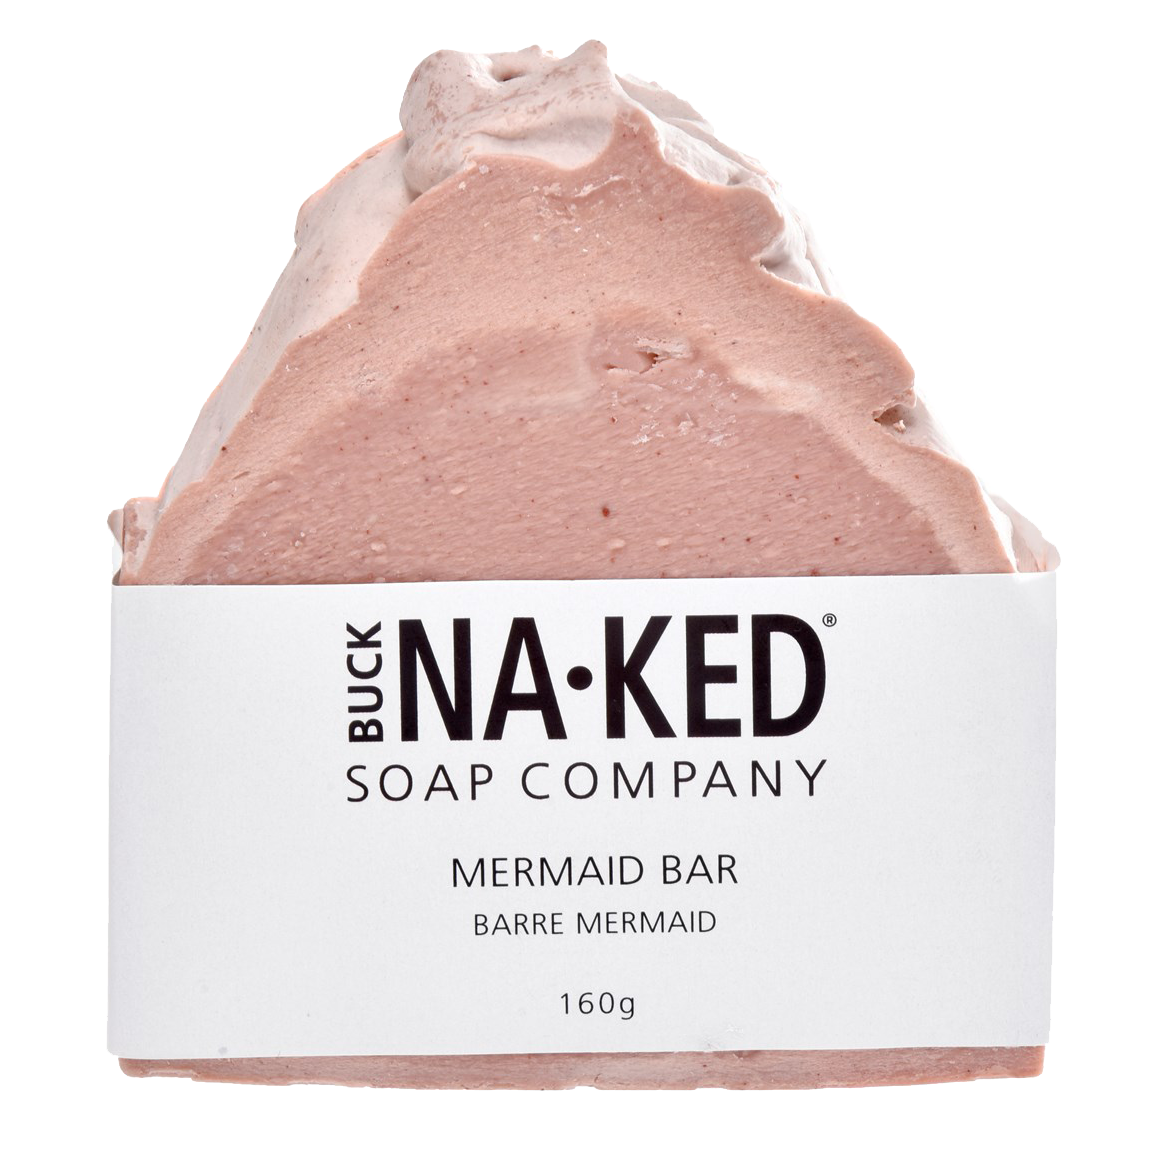 mermaid vegan shampoo bar